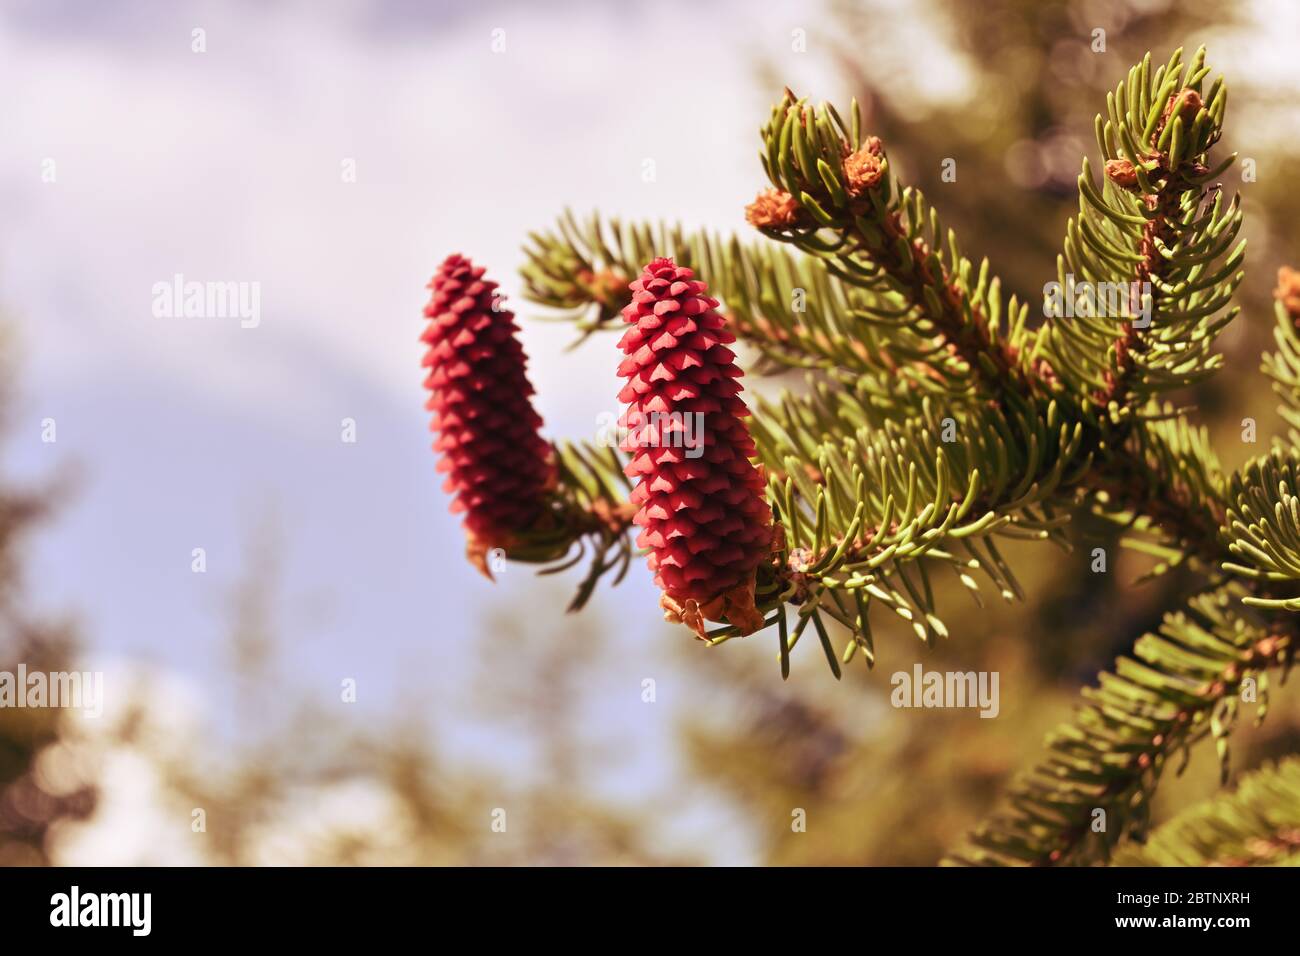 Cônes d'épinette rouge frais sur une branche. Petits cônes de sapin, la nature se réveille après l'hiver. Printemps dans la forêt. Banque D'Images